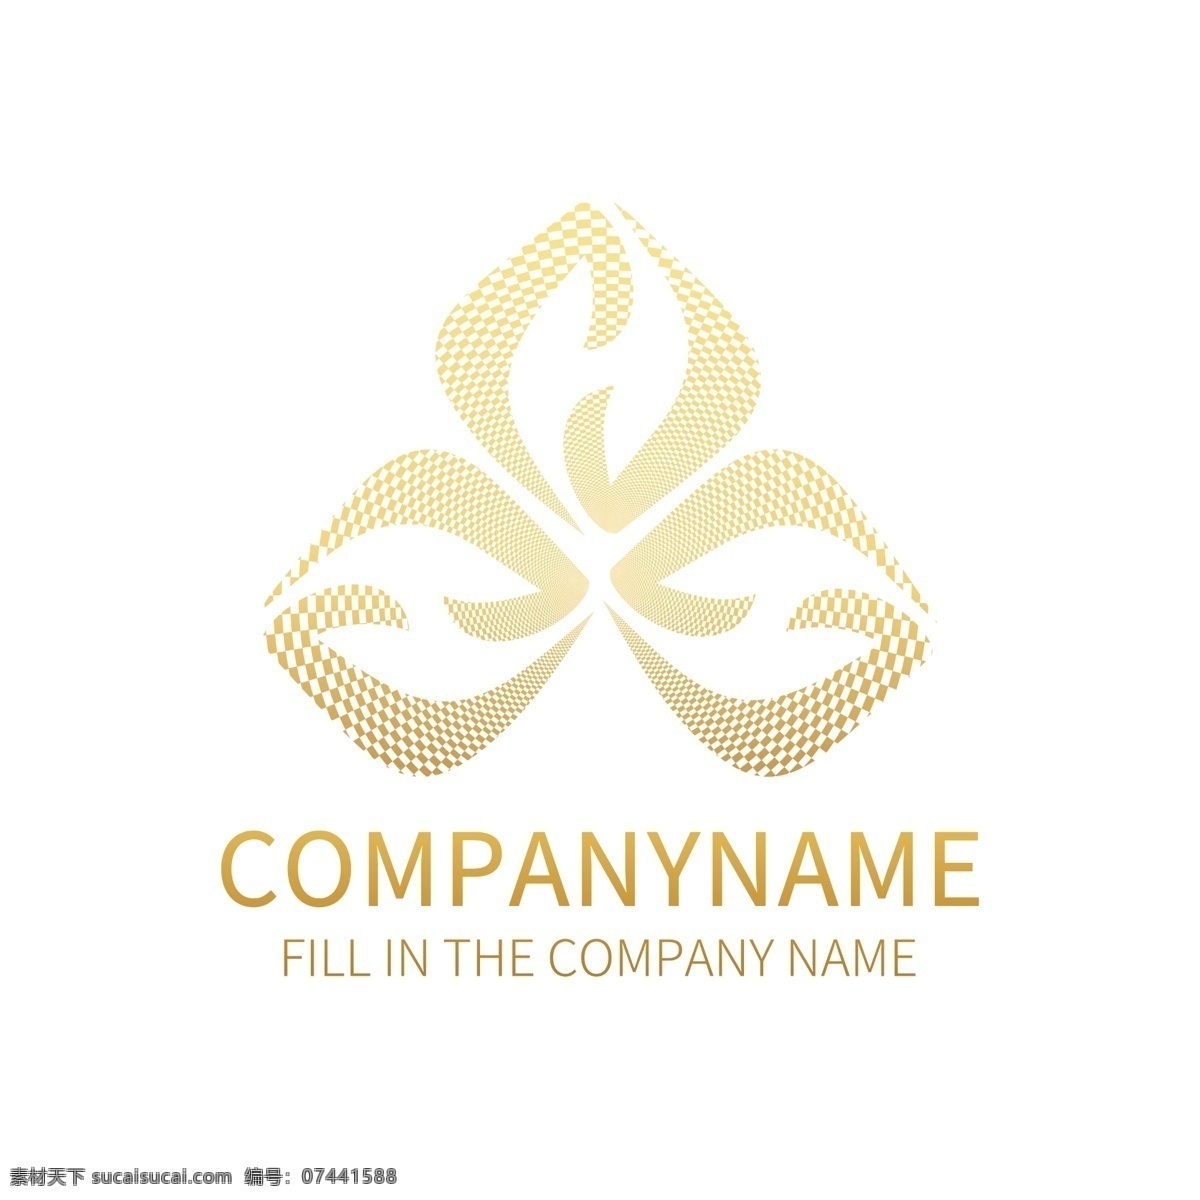 简约 商务 企业 商标 logo 标识设计 简约logo 标志 抽象 小 程序 企业logo logo设计